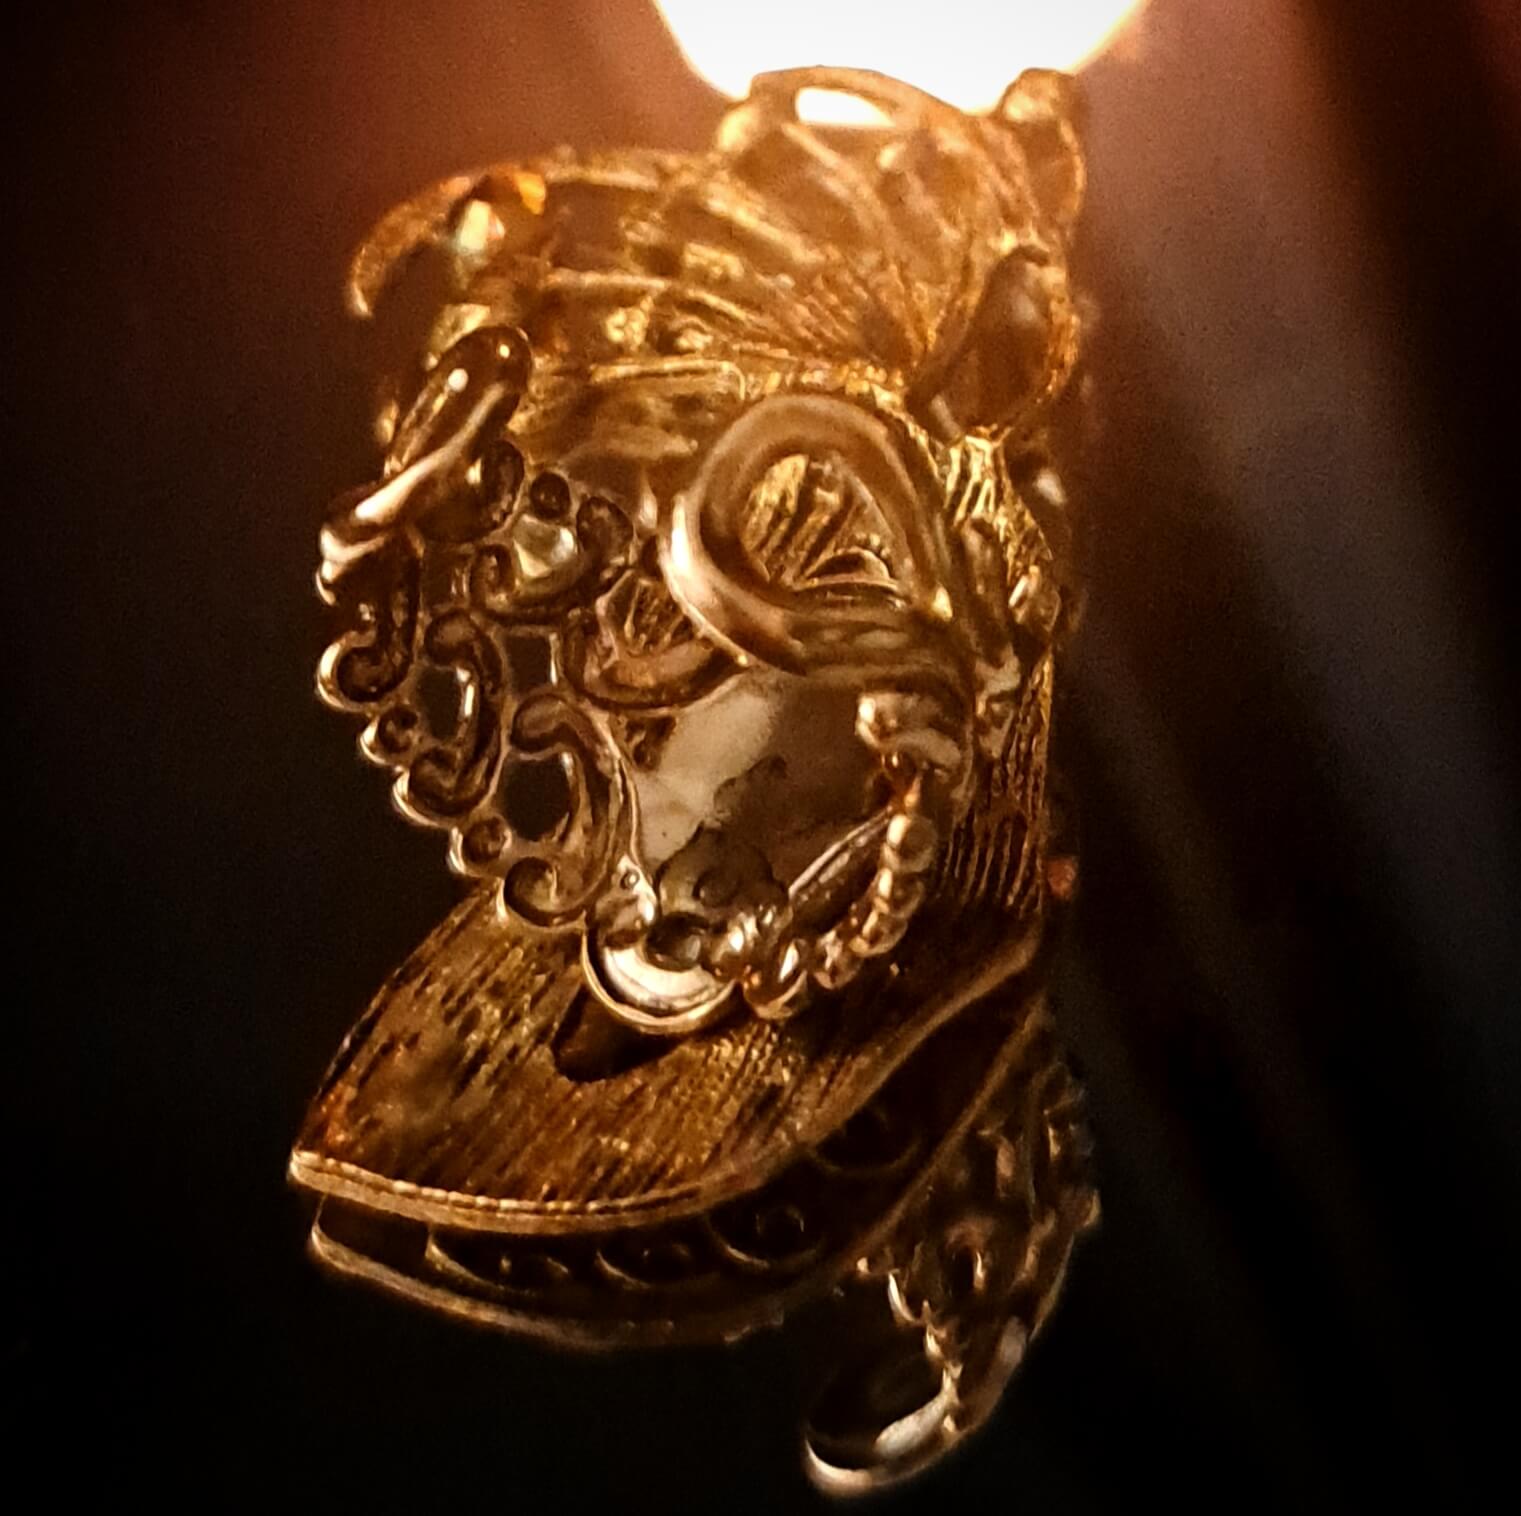 Masquerade Fantasy Mask Ring